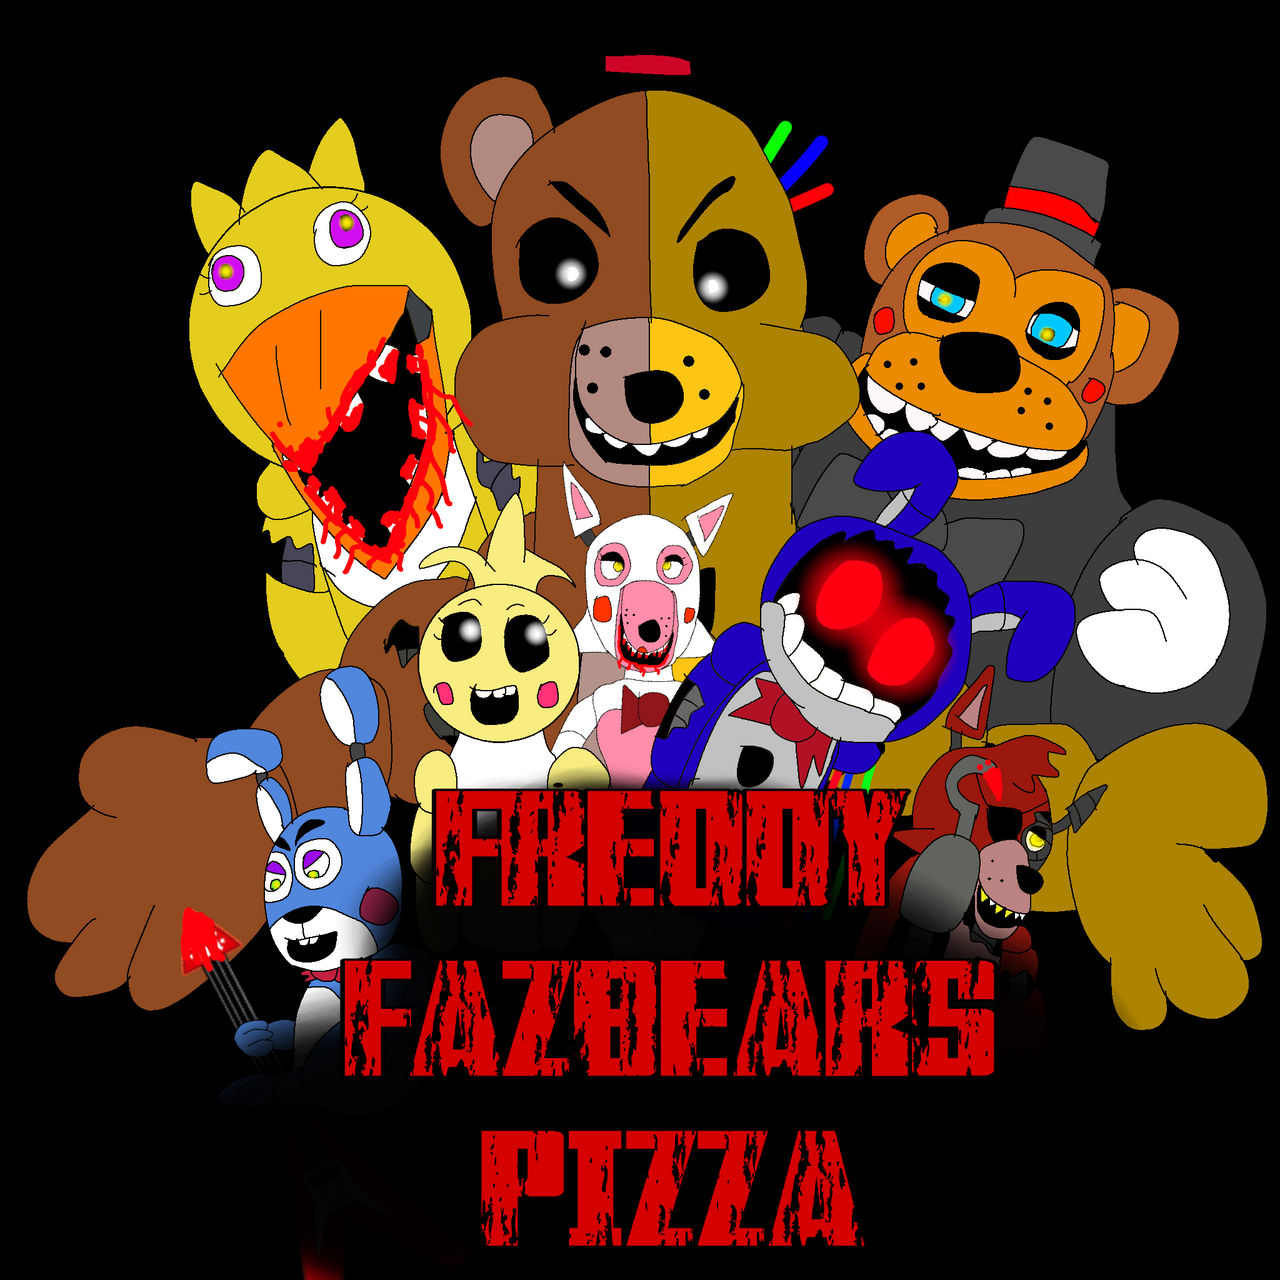 Fnaf movie) freddy fazbears pizza menu (edit) by galaxystudios78 on  DeviantArt